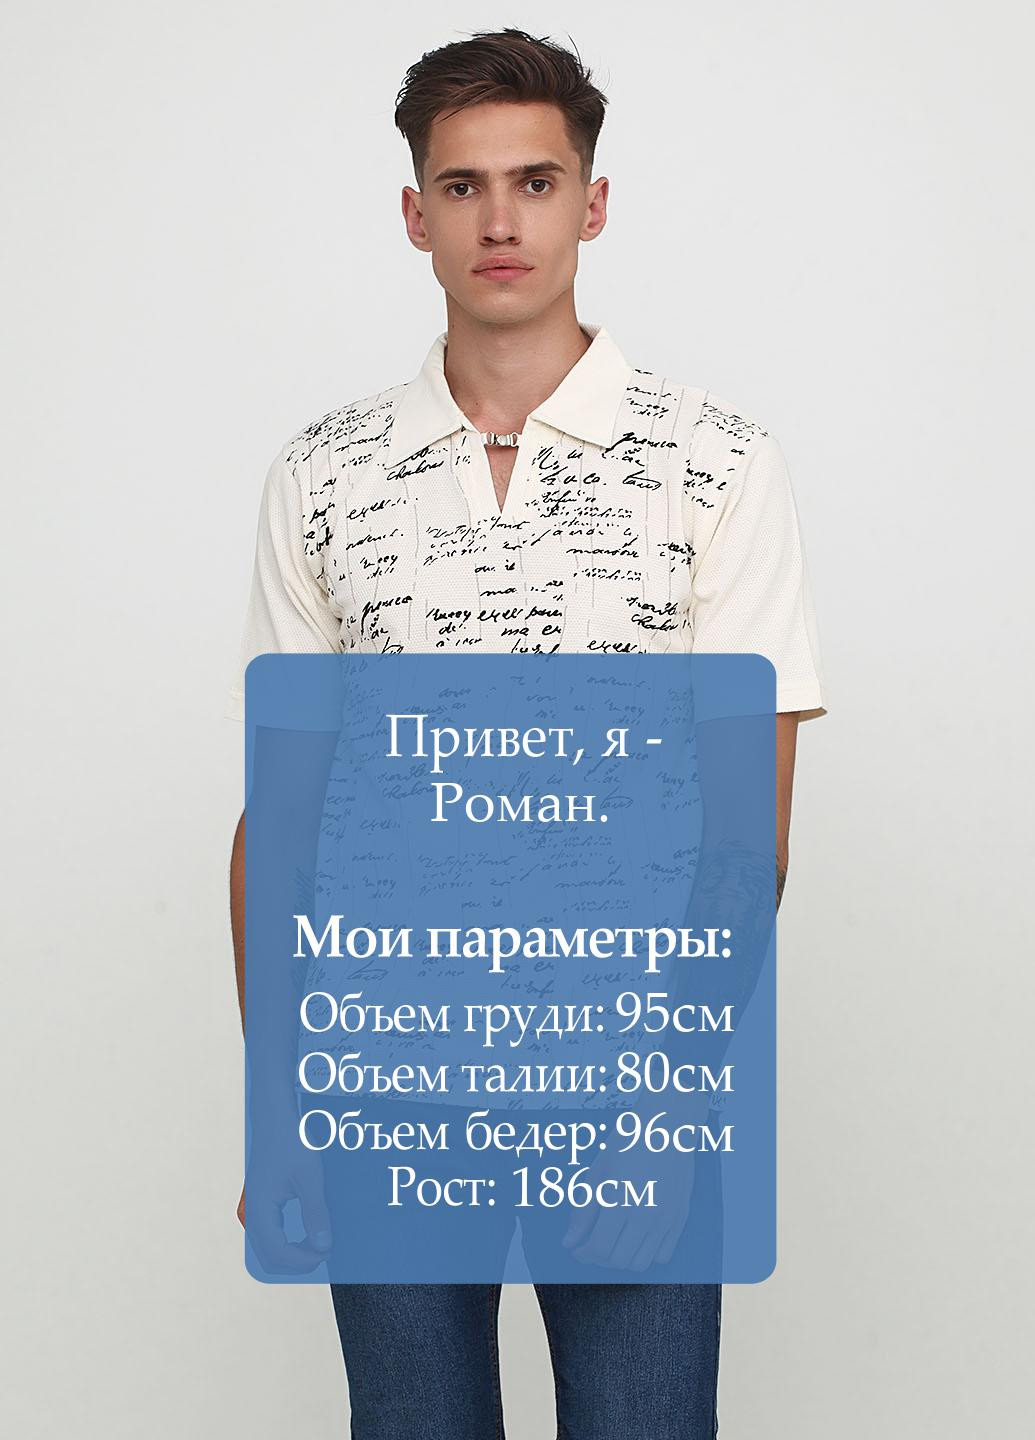 Бежевая футболка-поло для мужчин FIAMA с абстрактным узором